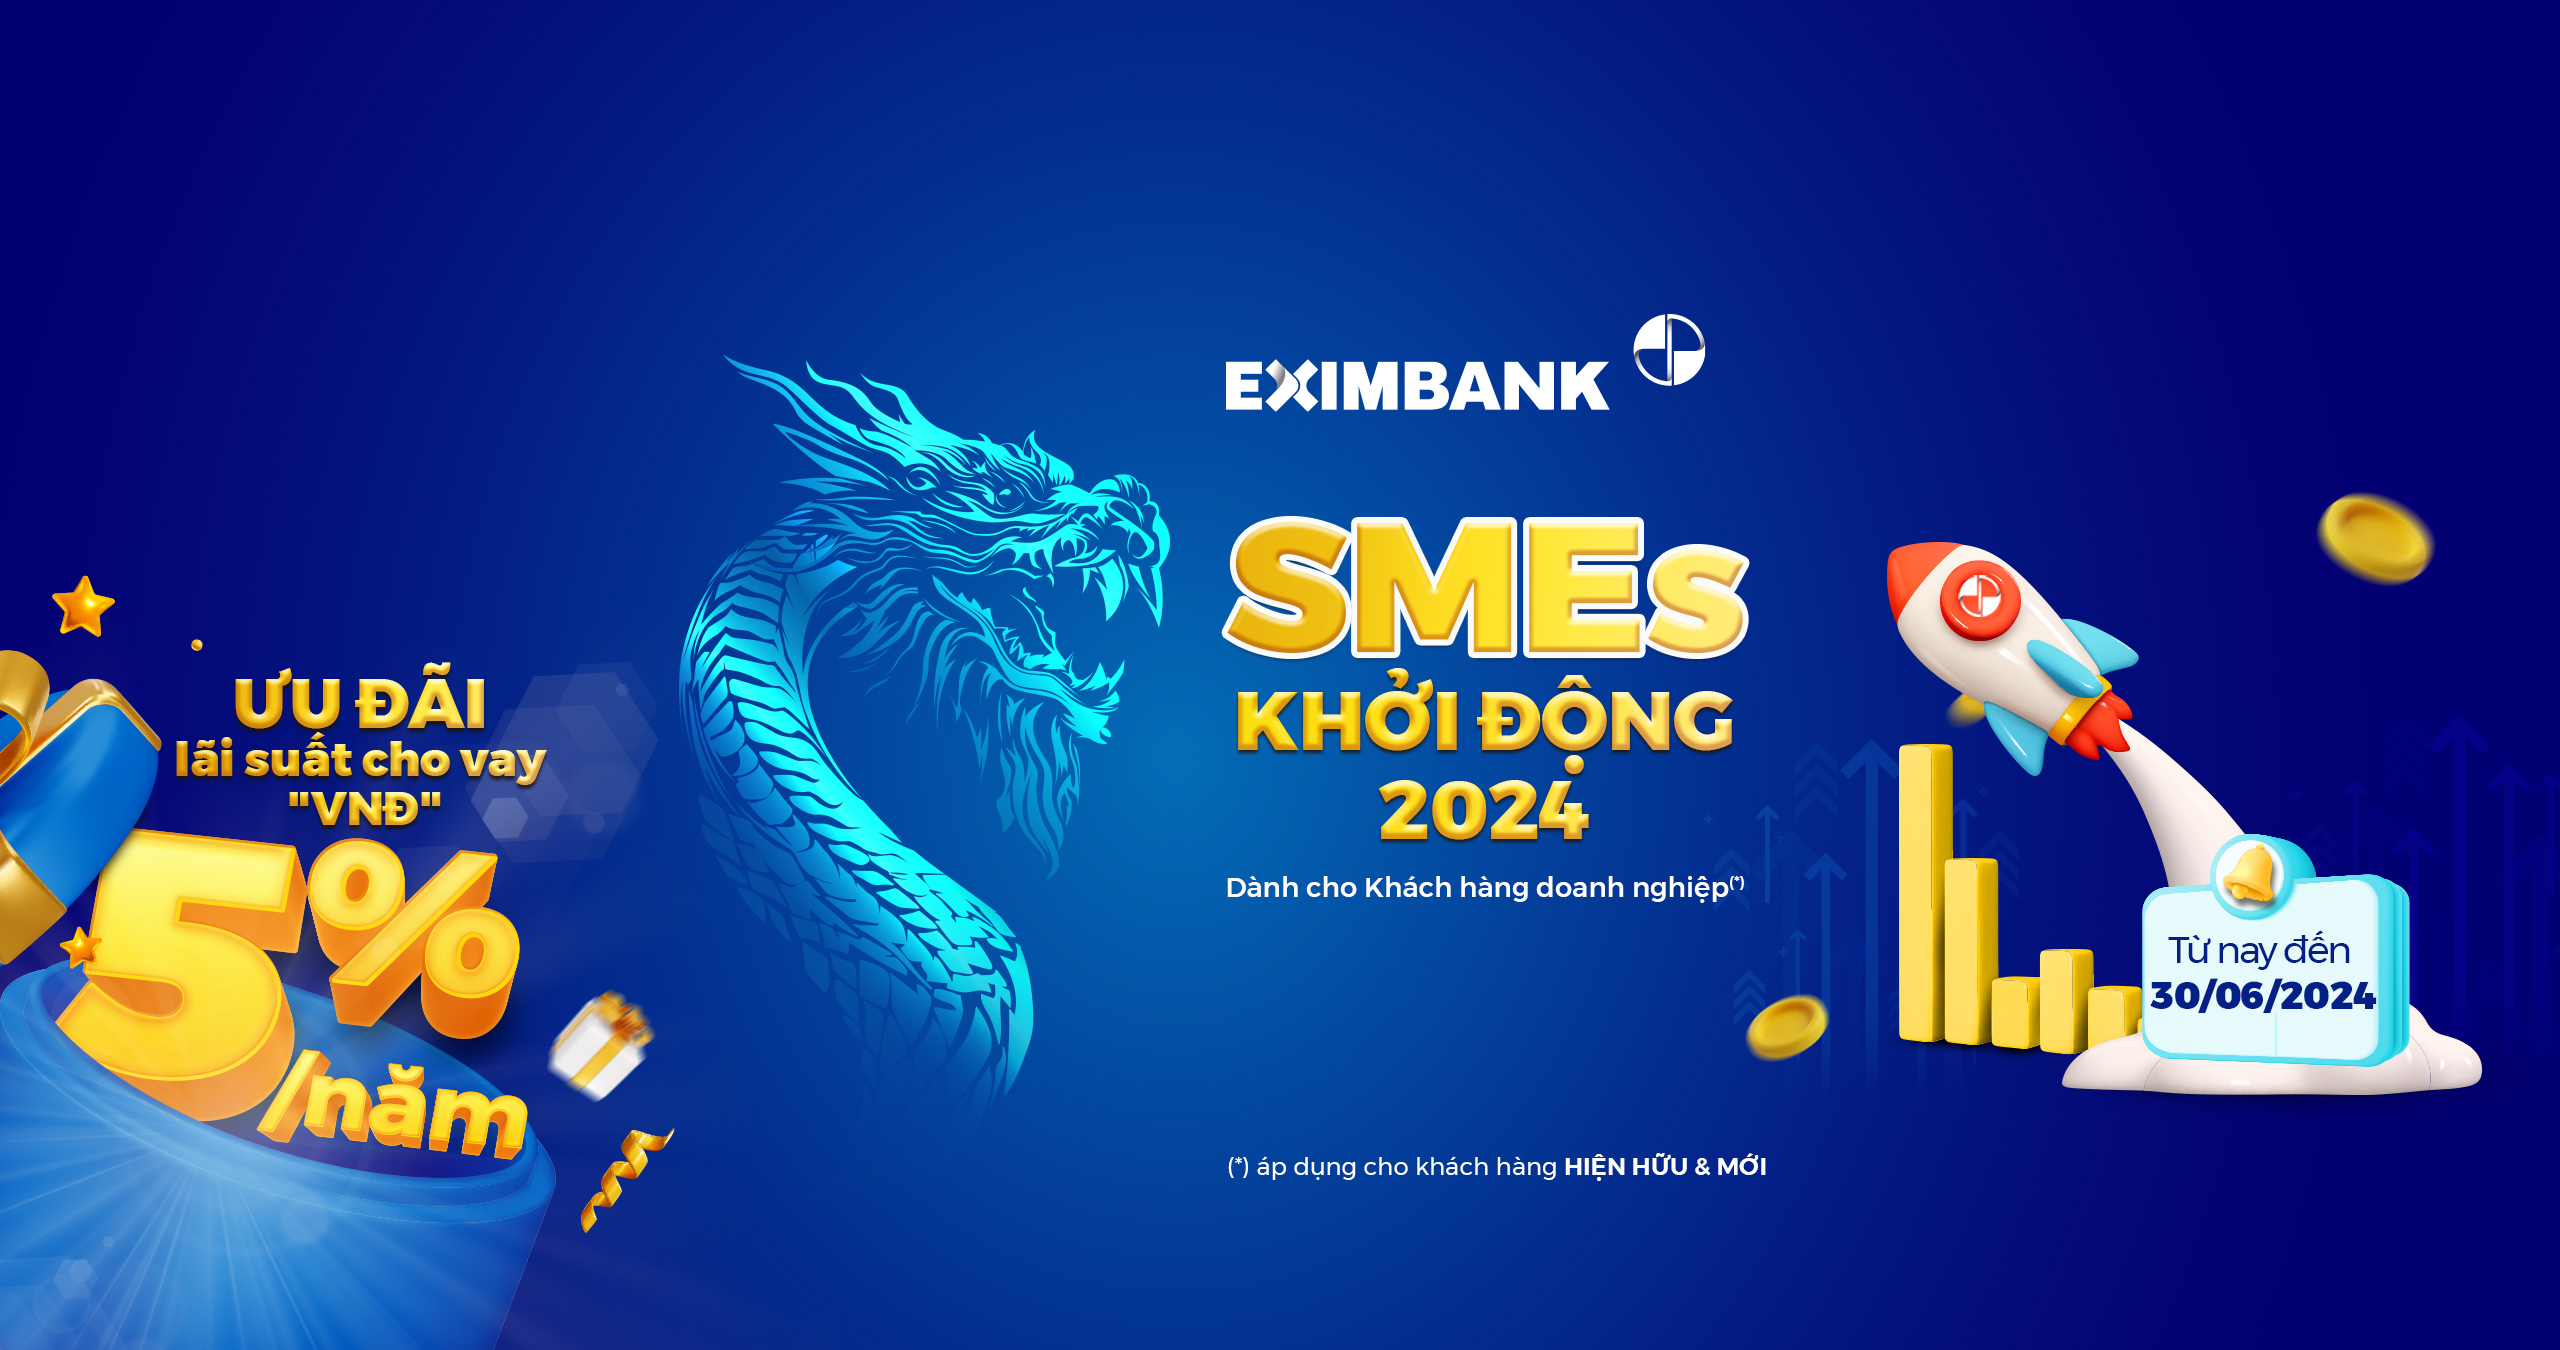 Eximbank tung chương trình cho vay ưu đãi 'SMEs - Khởi động 2024'- Ảnh 1.